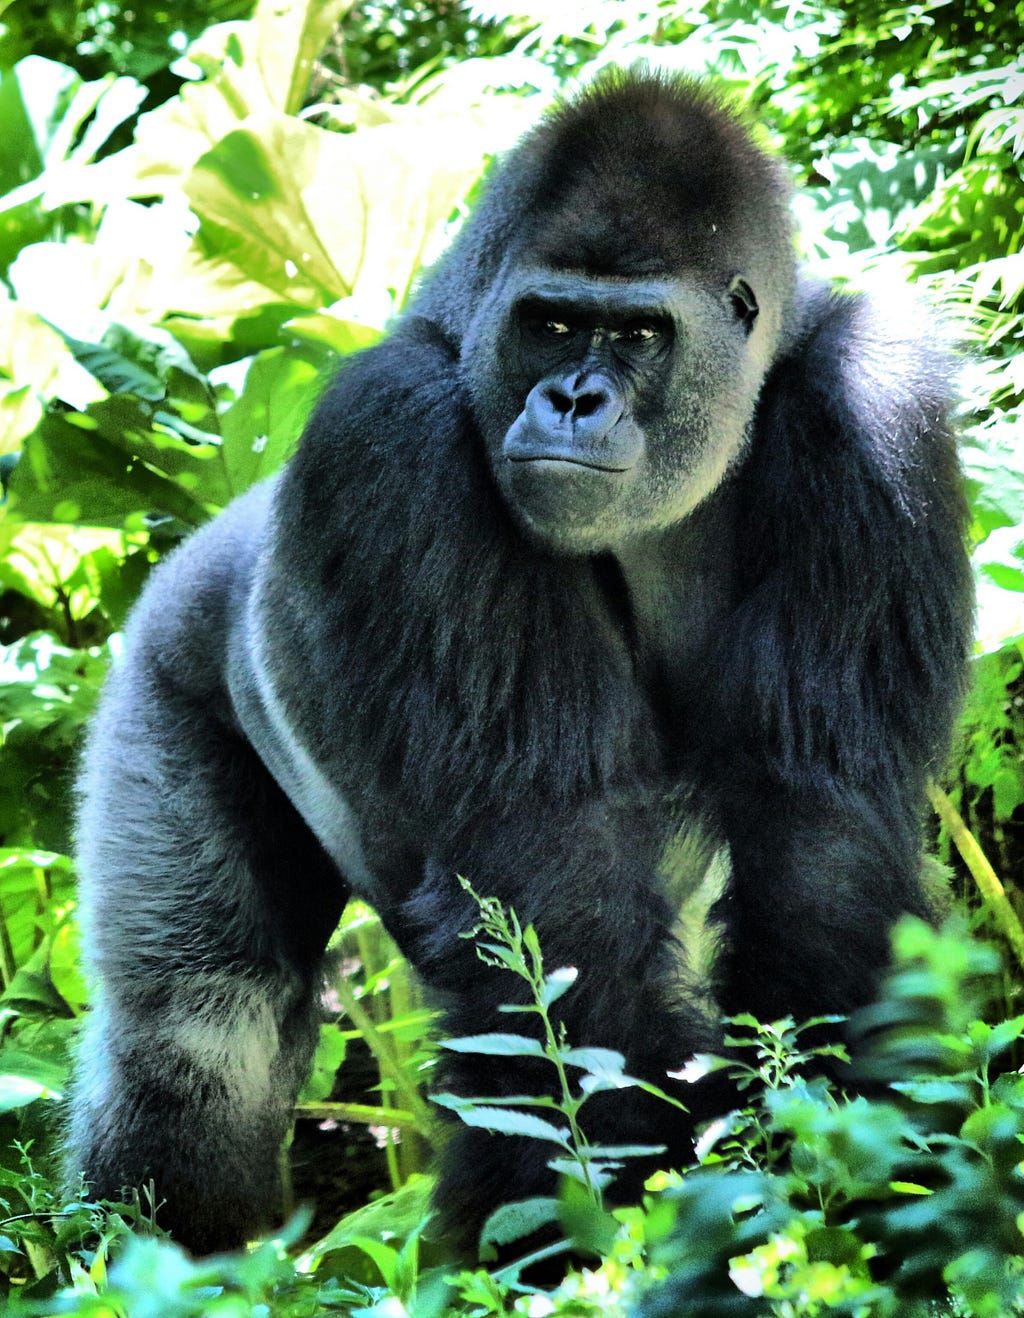 A very handsome gorilla